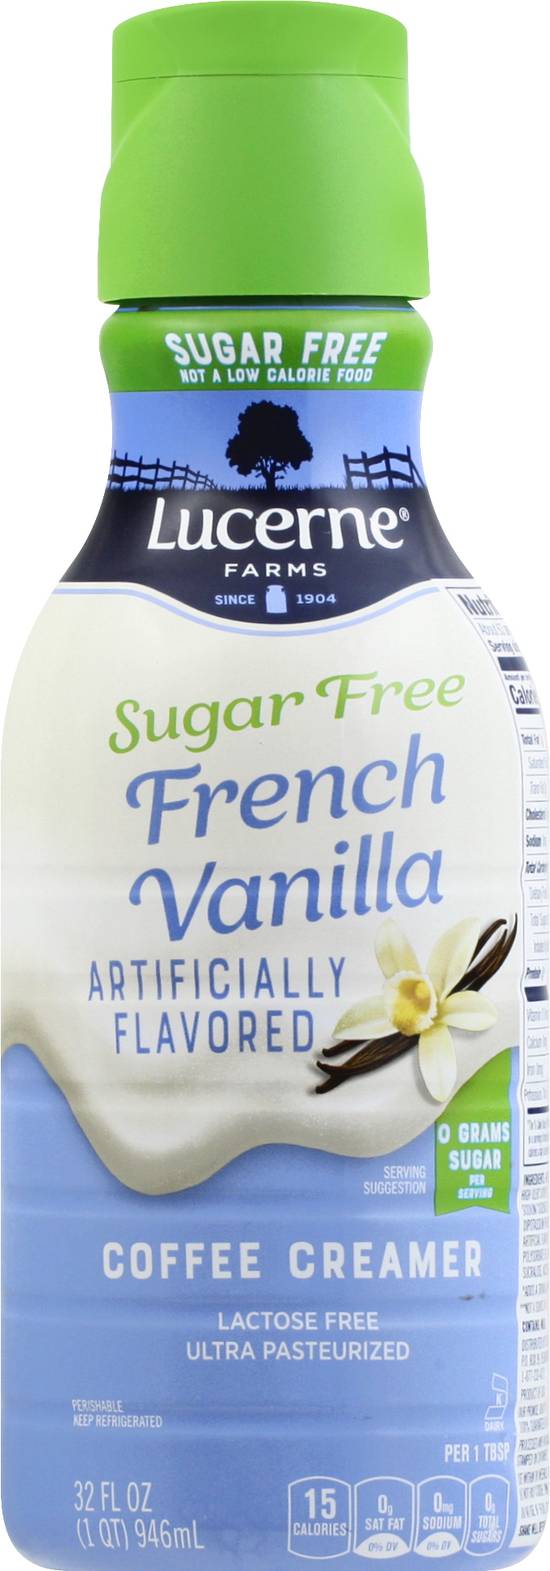 Lucerne Sugar Free French Vanilla Coffee Creamer